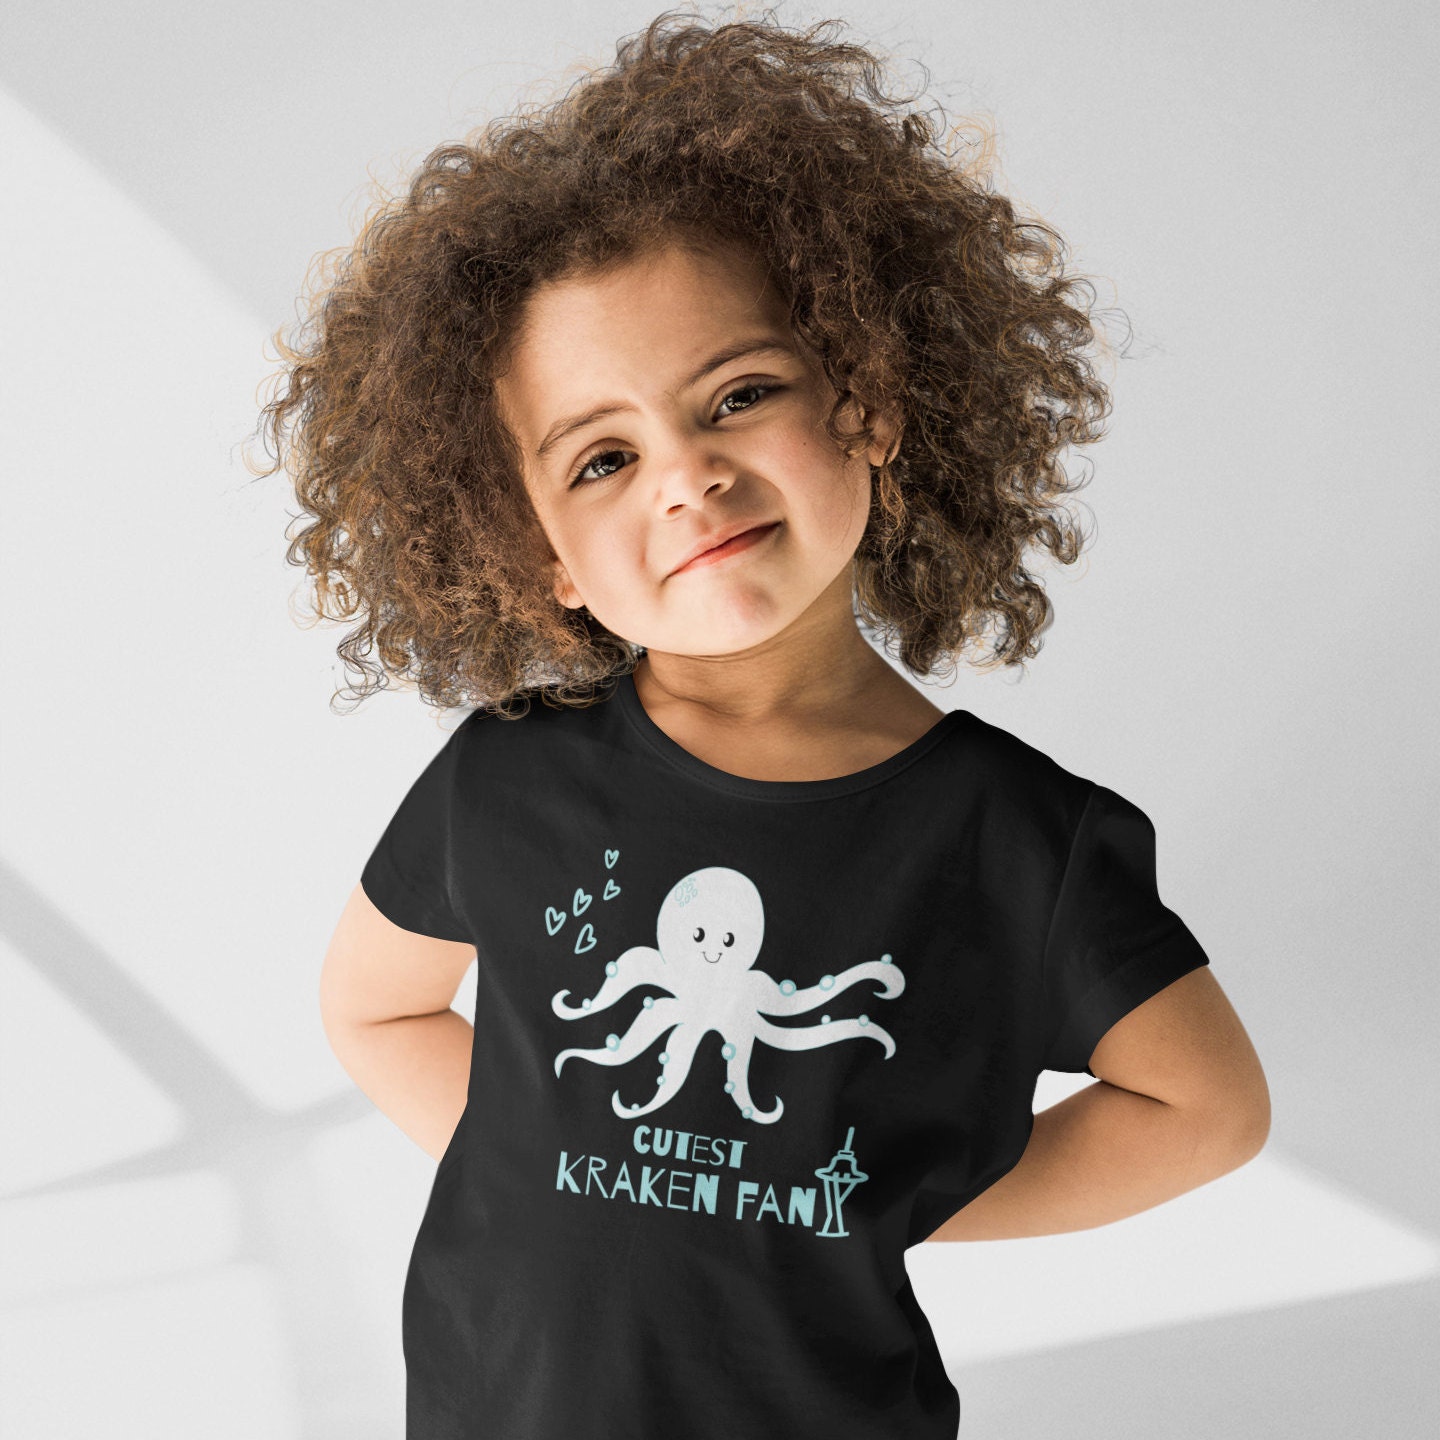 Kids Seattle Kraken Gear, Youth Kraken Apparel, Merchandise